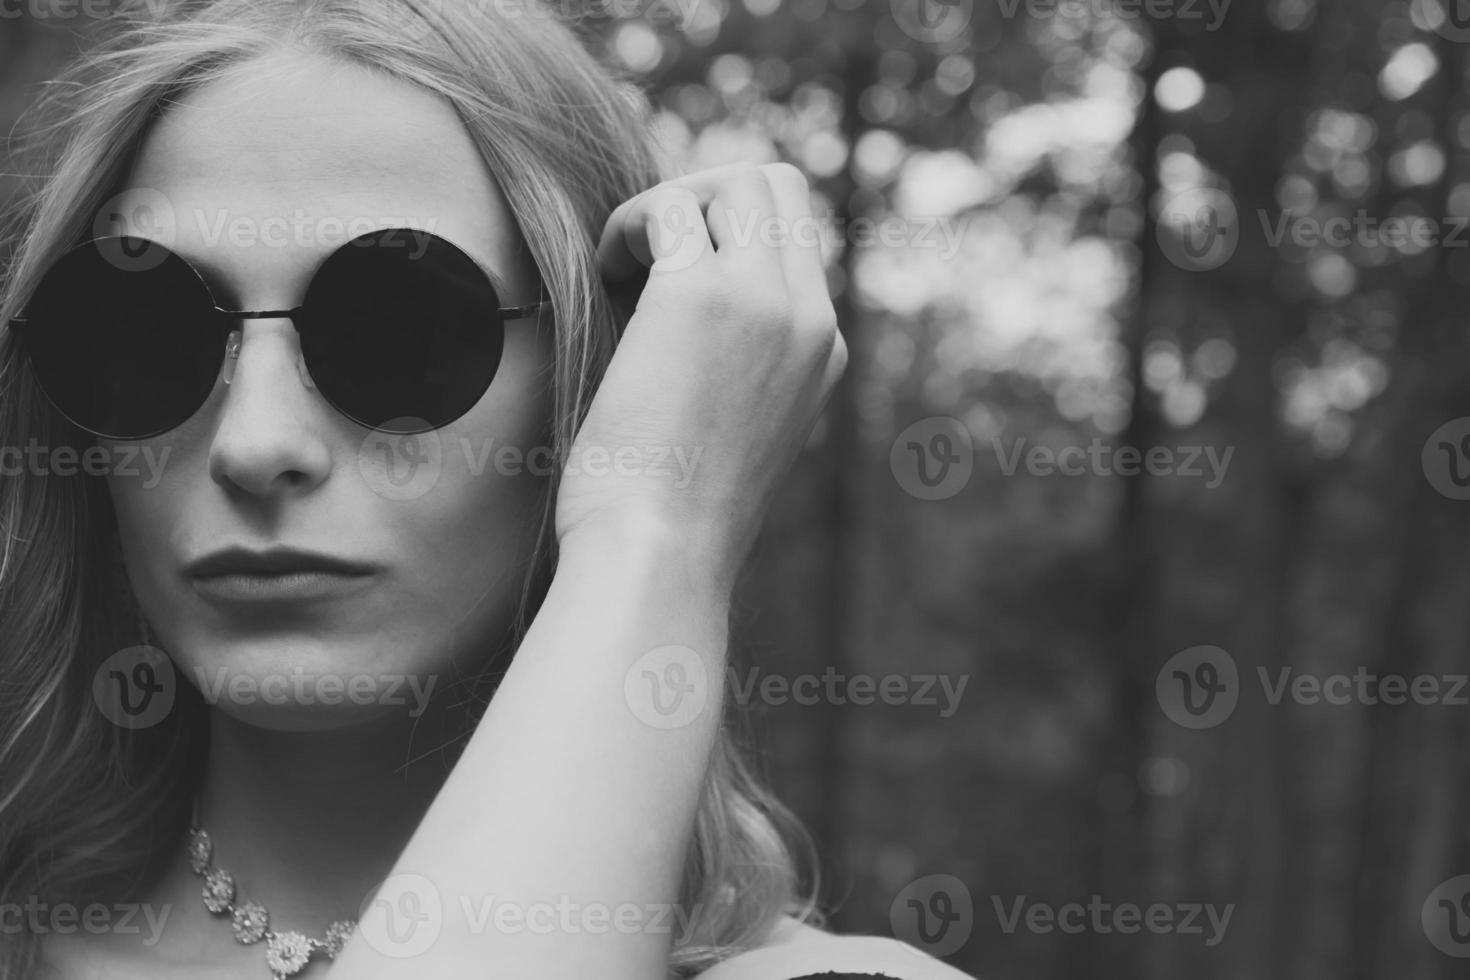 femme en lunettes de soleil rondes noires en noir et blanc photo